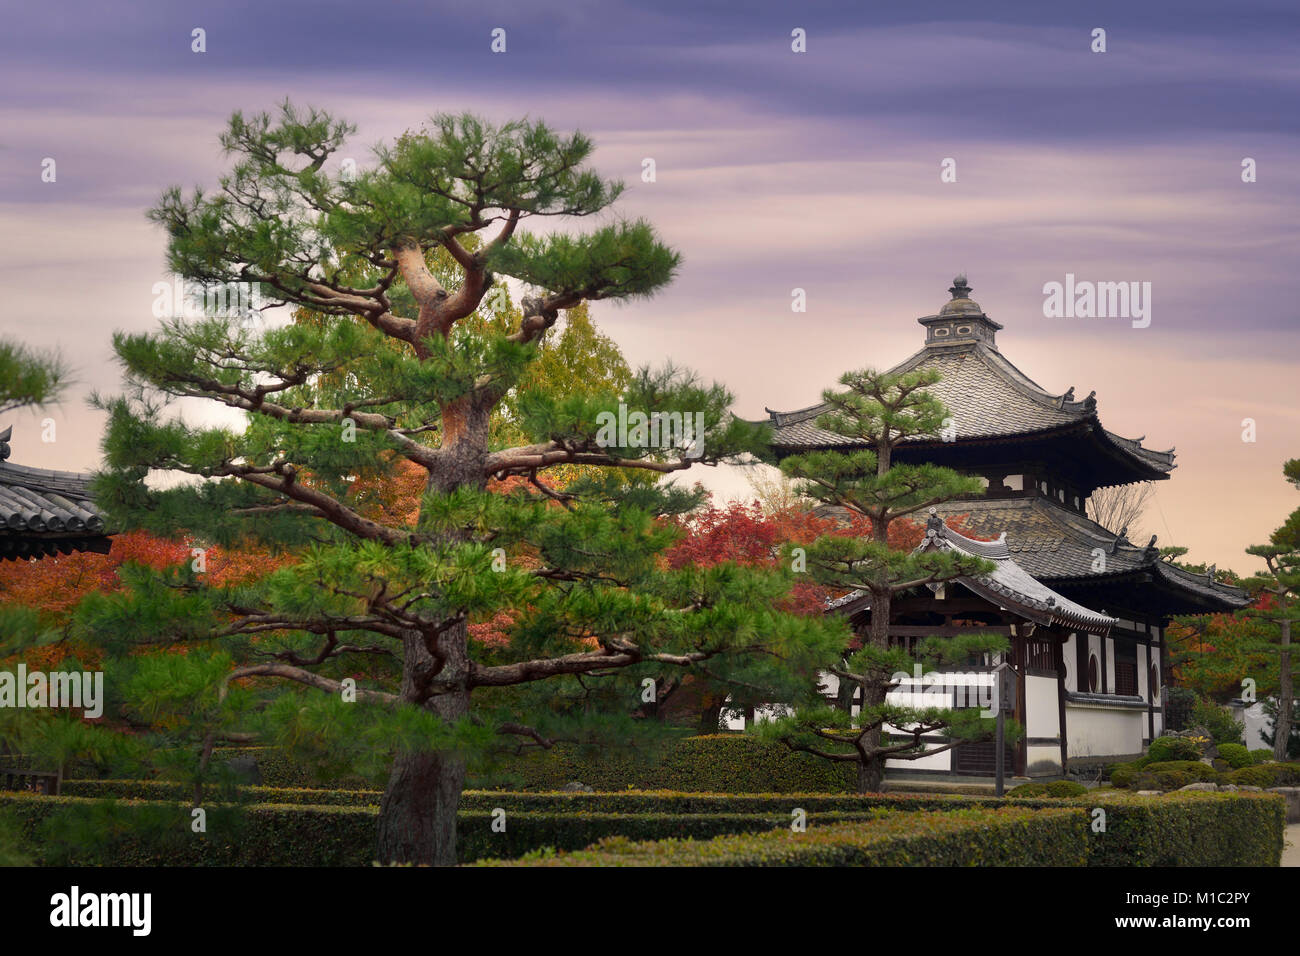 Licenza disponibile alle MaximImages.com:00 - Giardino con splendidi pini di fronte al campanile del tempio di Tofukuji e un sub-tempio in uno scenario autunnale. Foto Stock